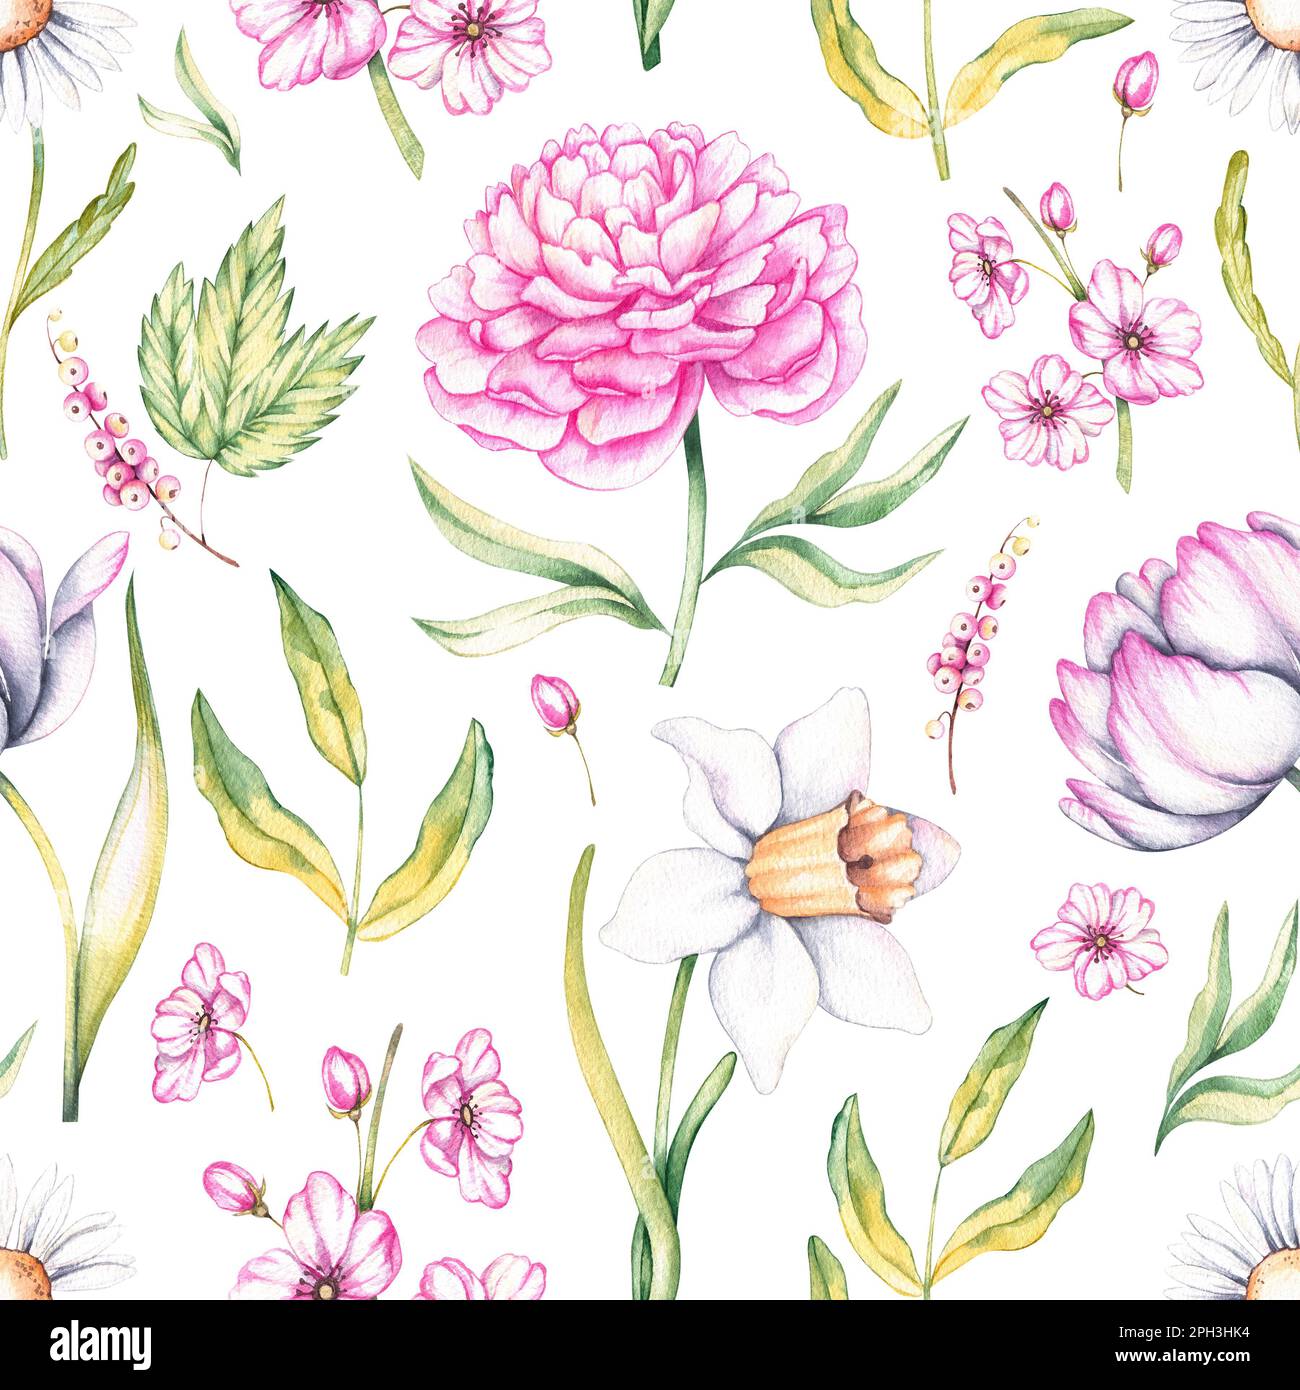 Motif aquarelle avec fleurs printanières (tulipe, pivoine, narcisse, camomille, pivoine). Motif avec fleurs pour un motif en tissu, papier d'emballage, papiers peints Banque D'Images